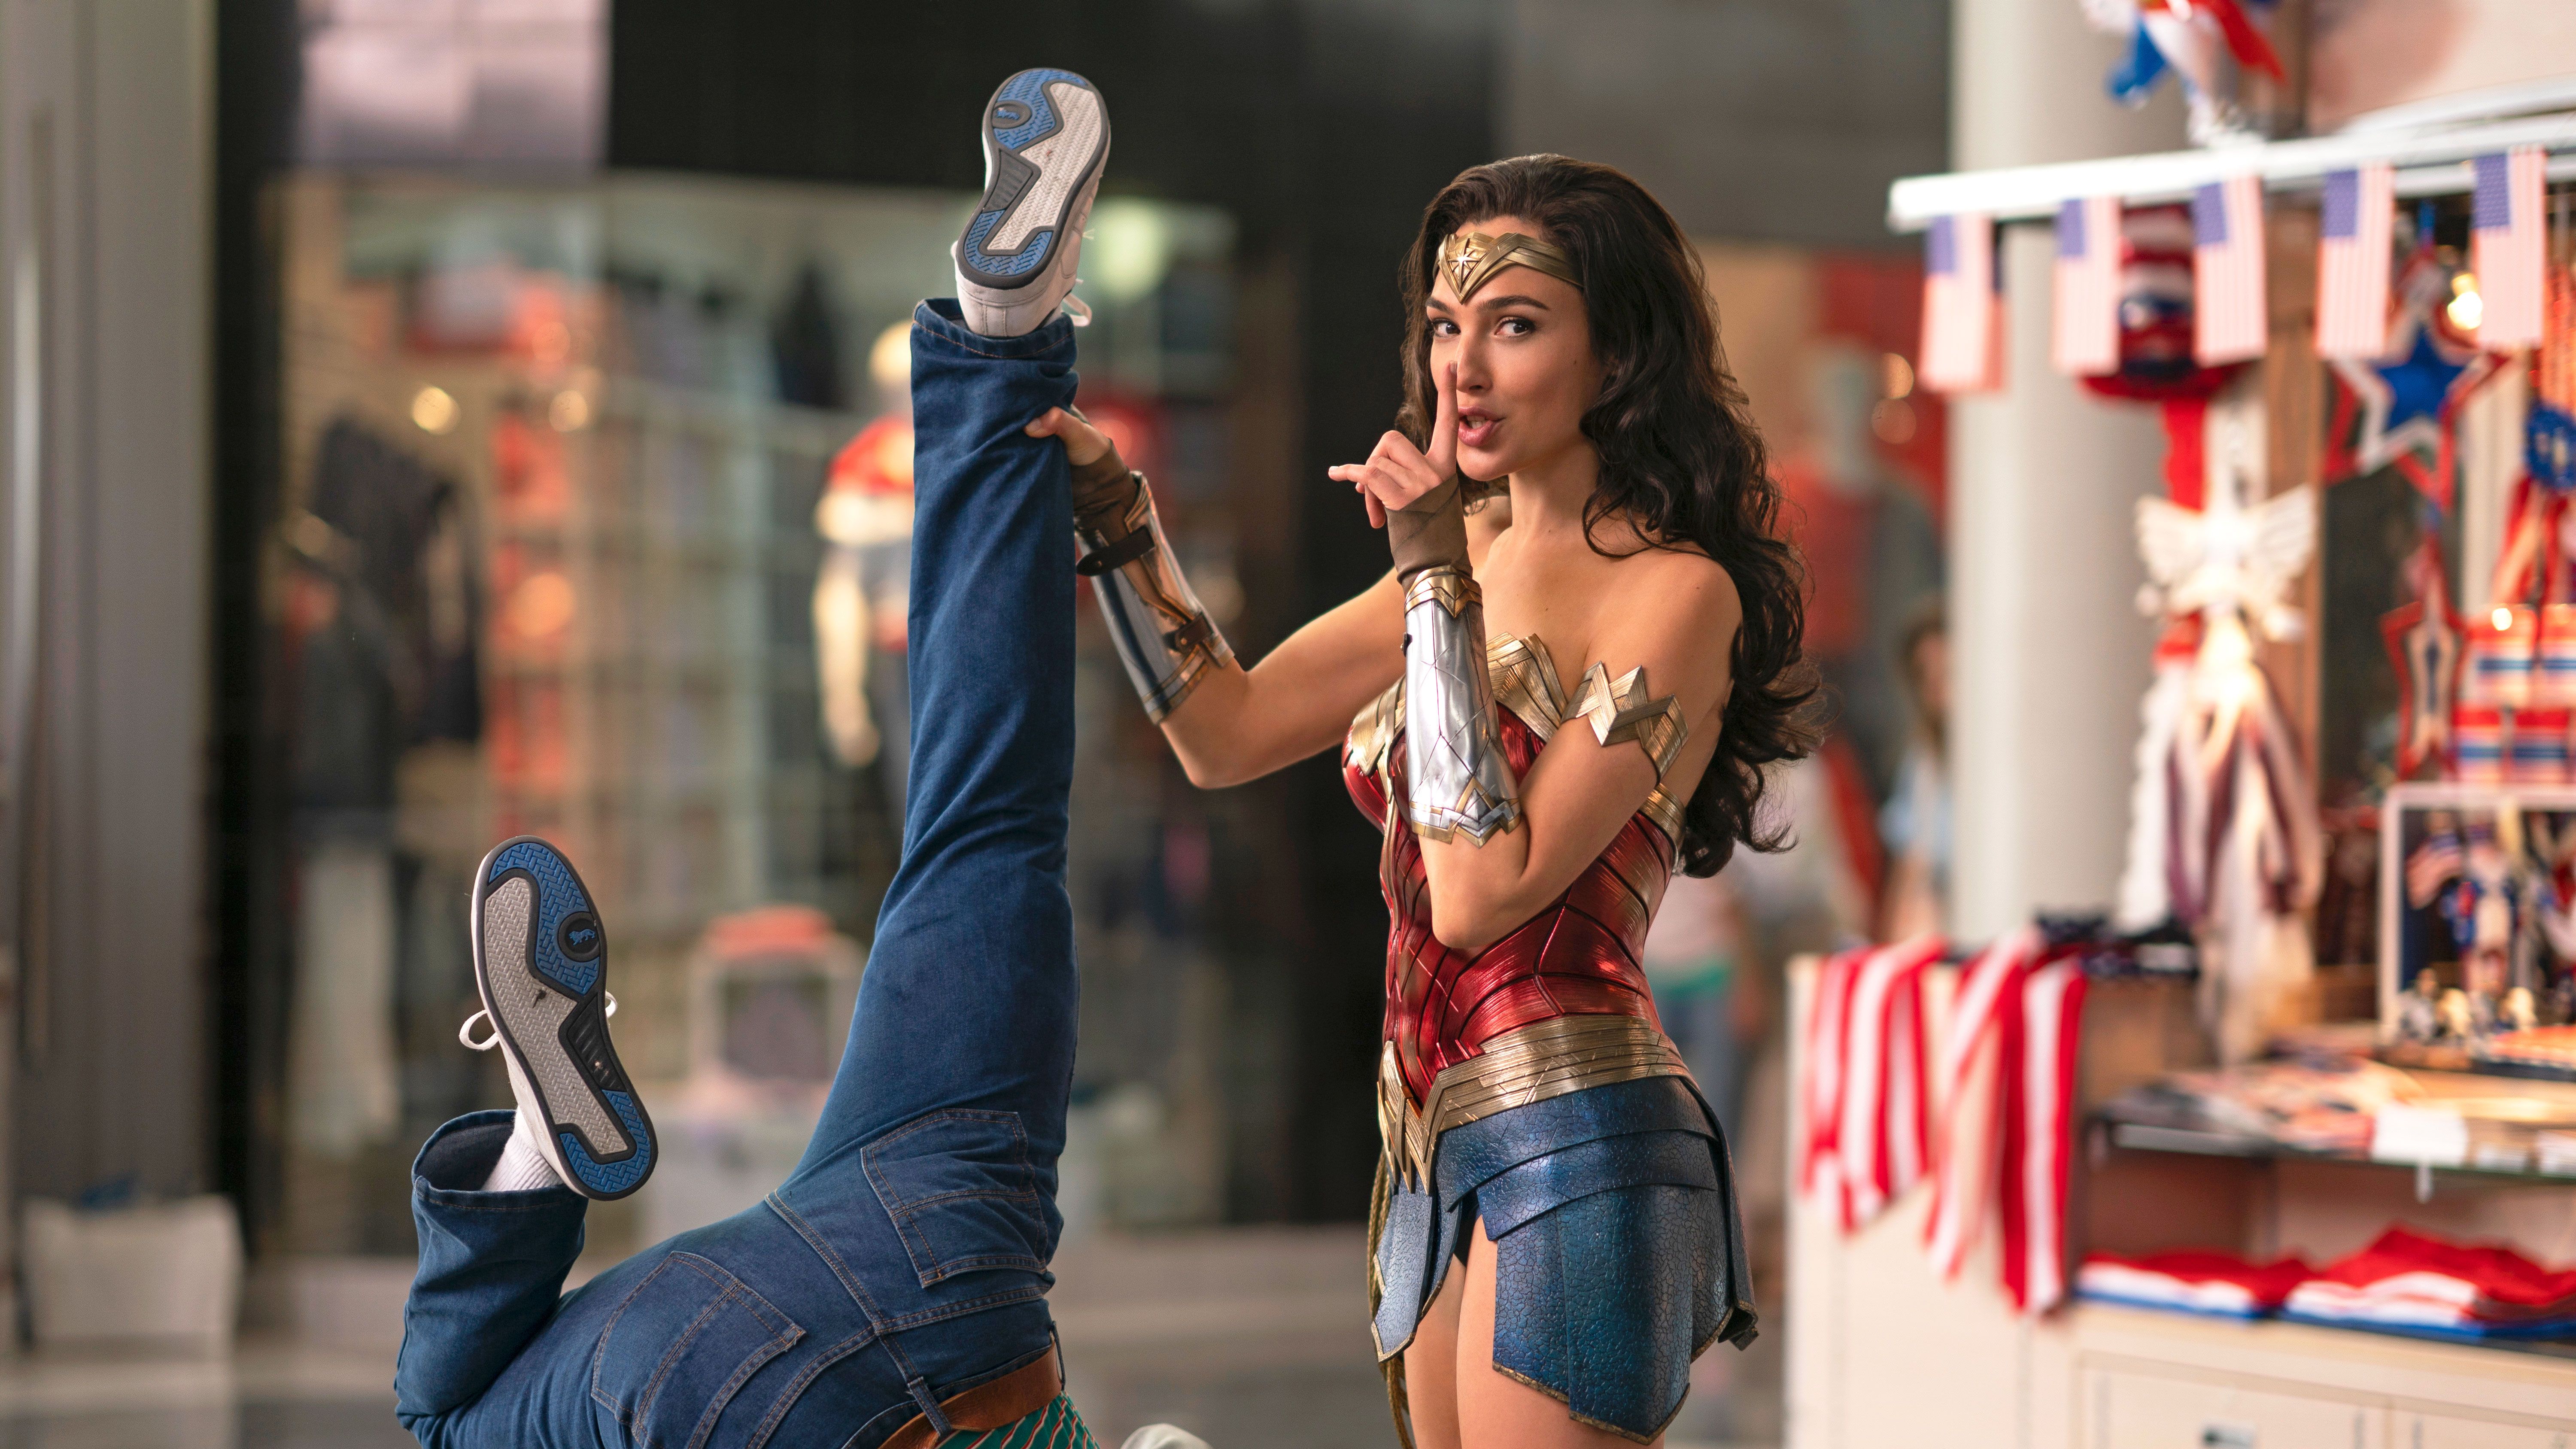 Wonder Woman 3, Possible Cast Trailer, DC